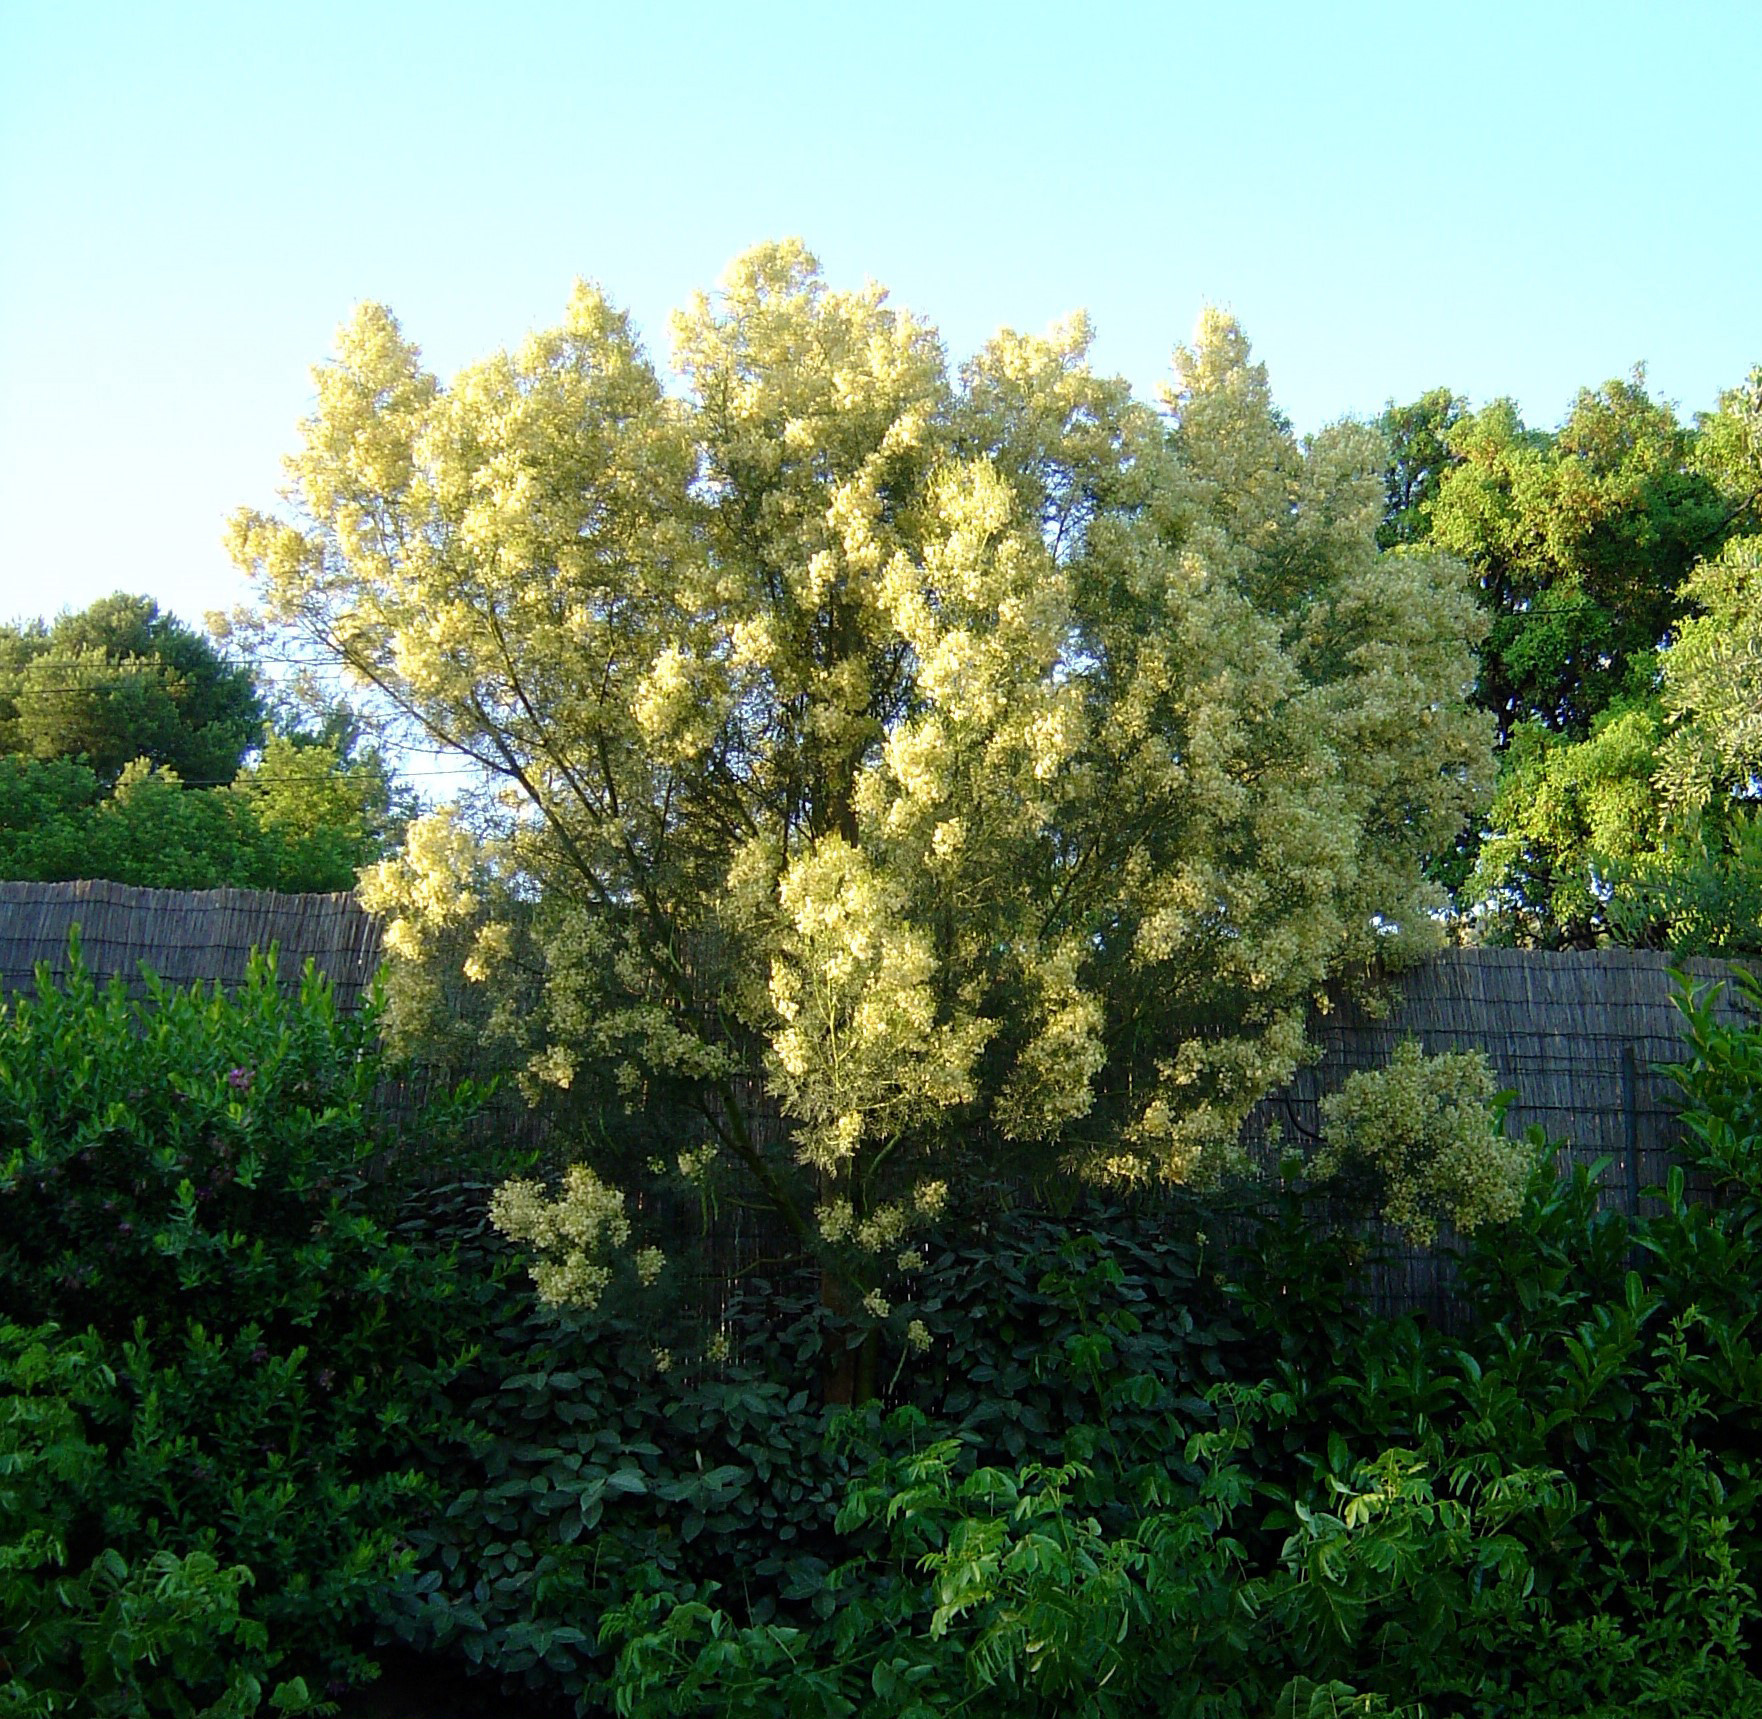 Acacia muelleriana